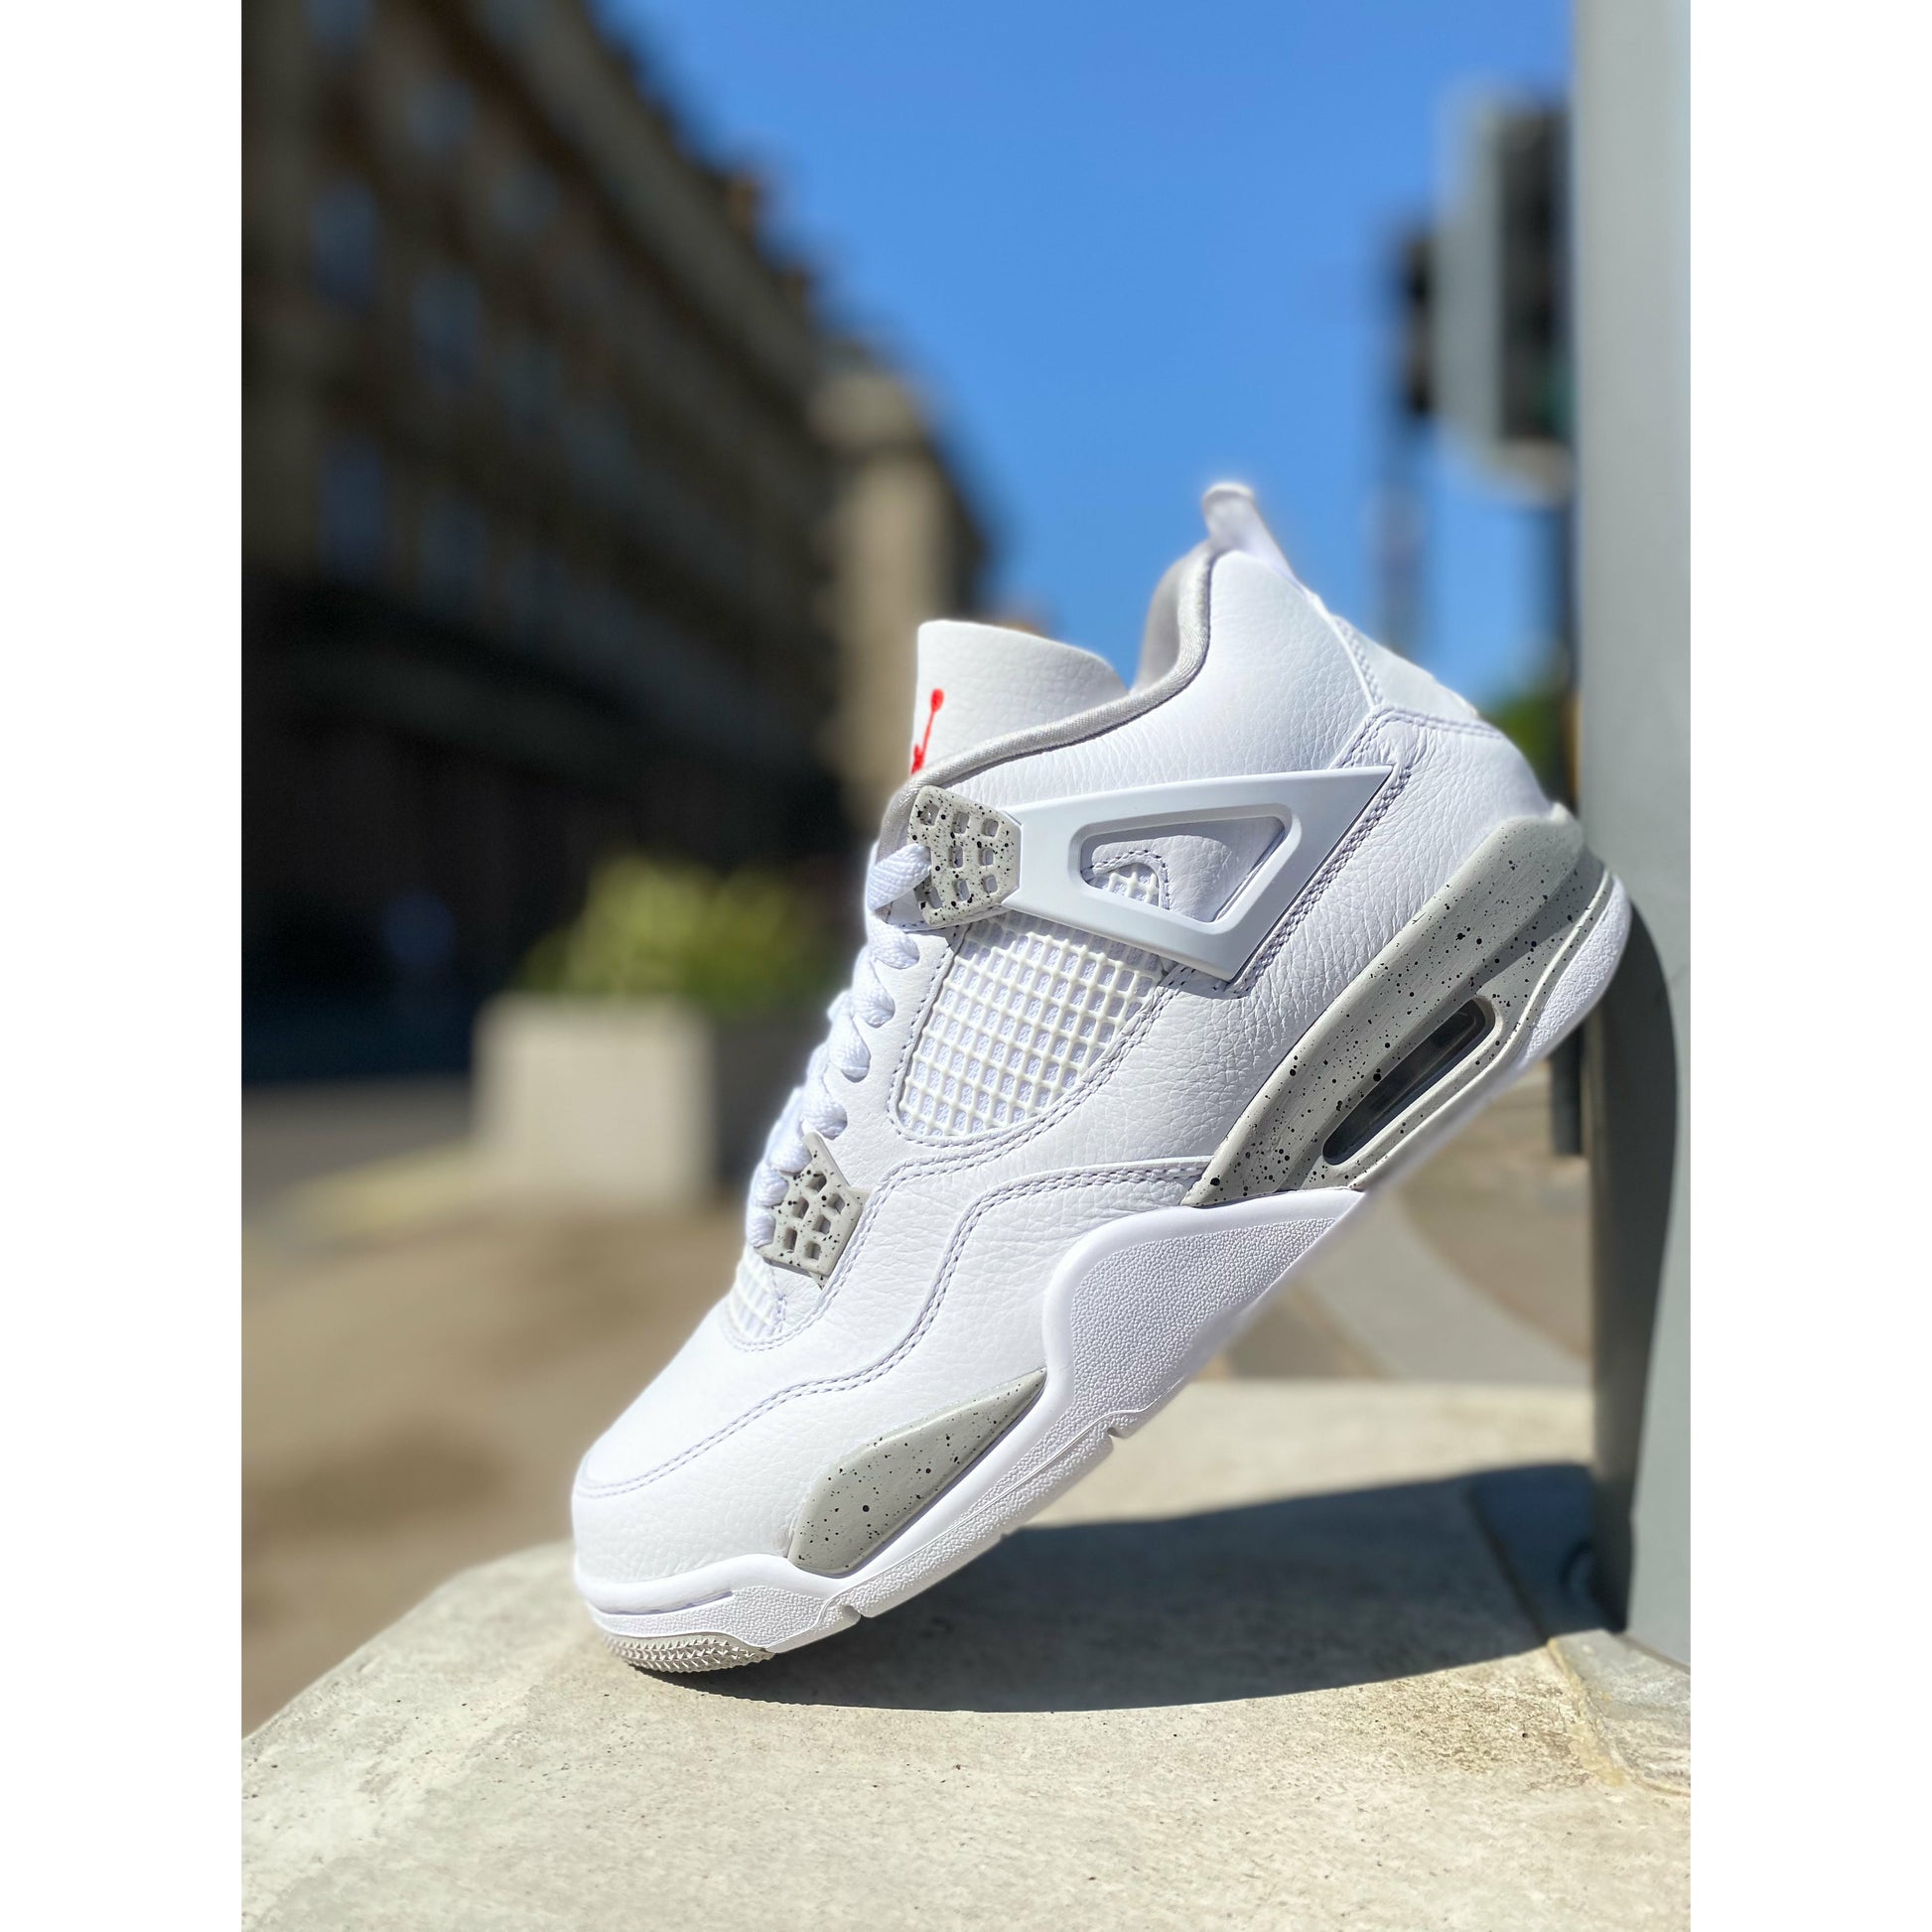 Jordan 4 Retro White Oreo (2021) from Jordan's